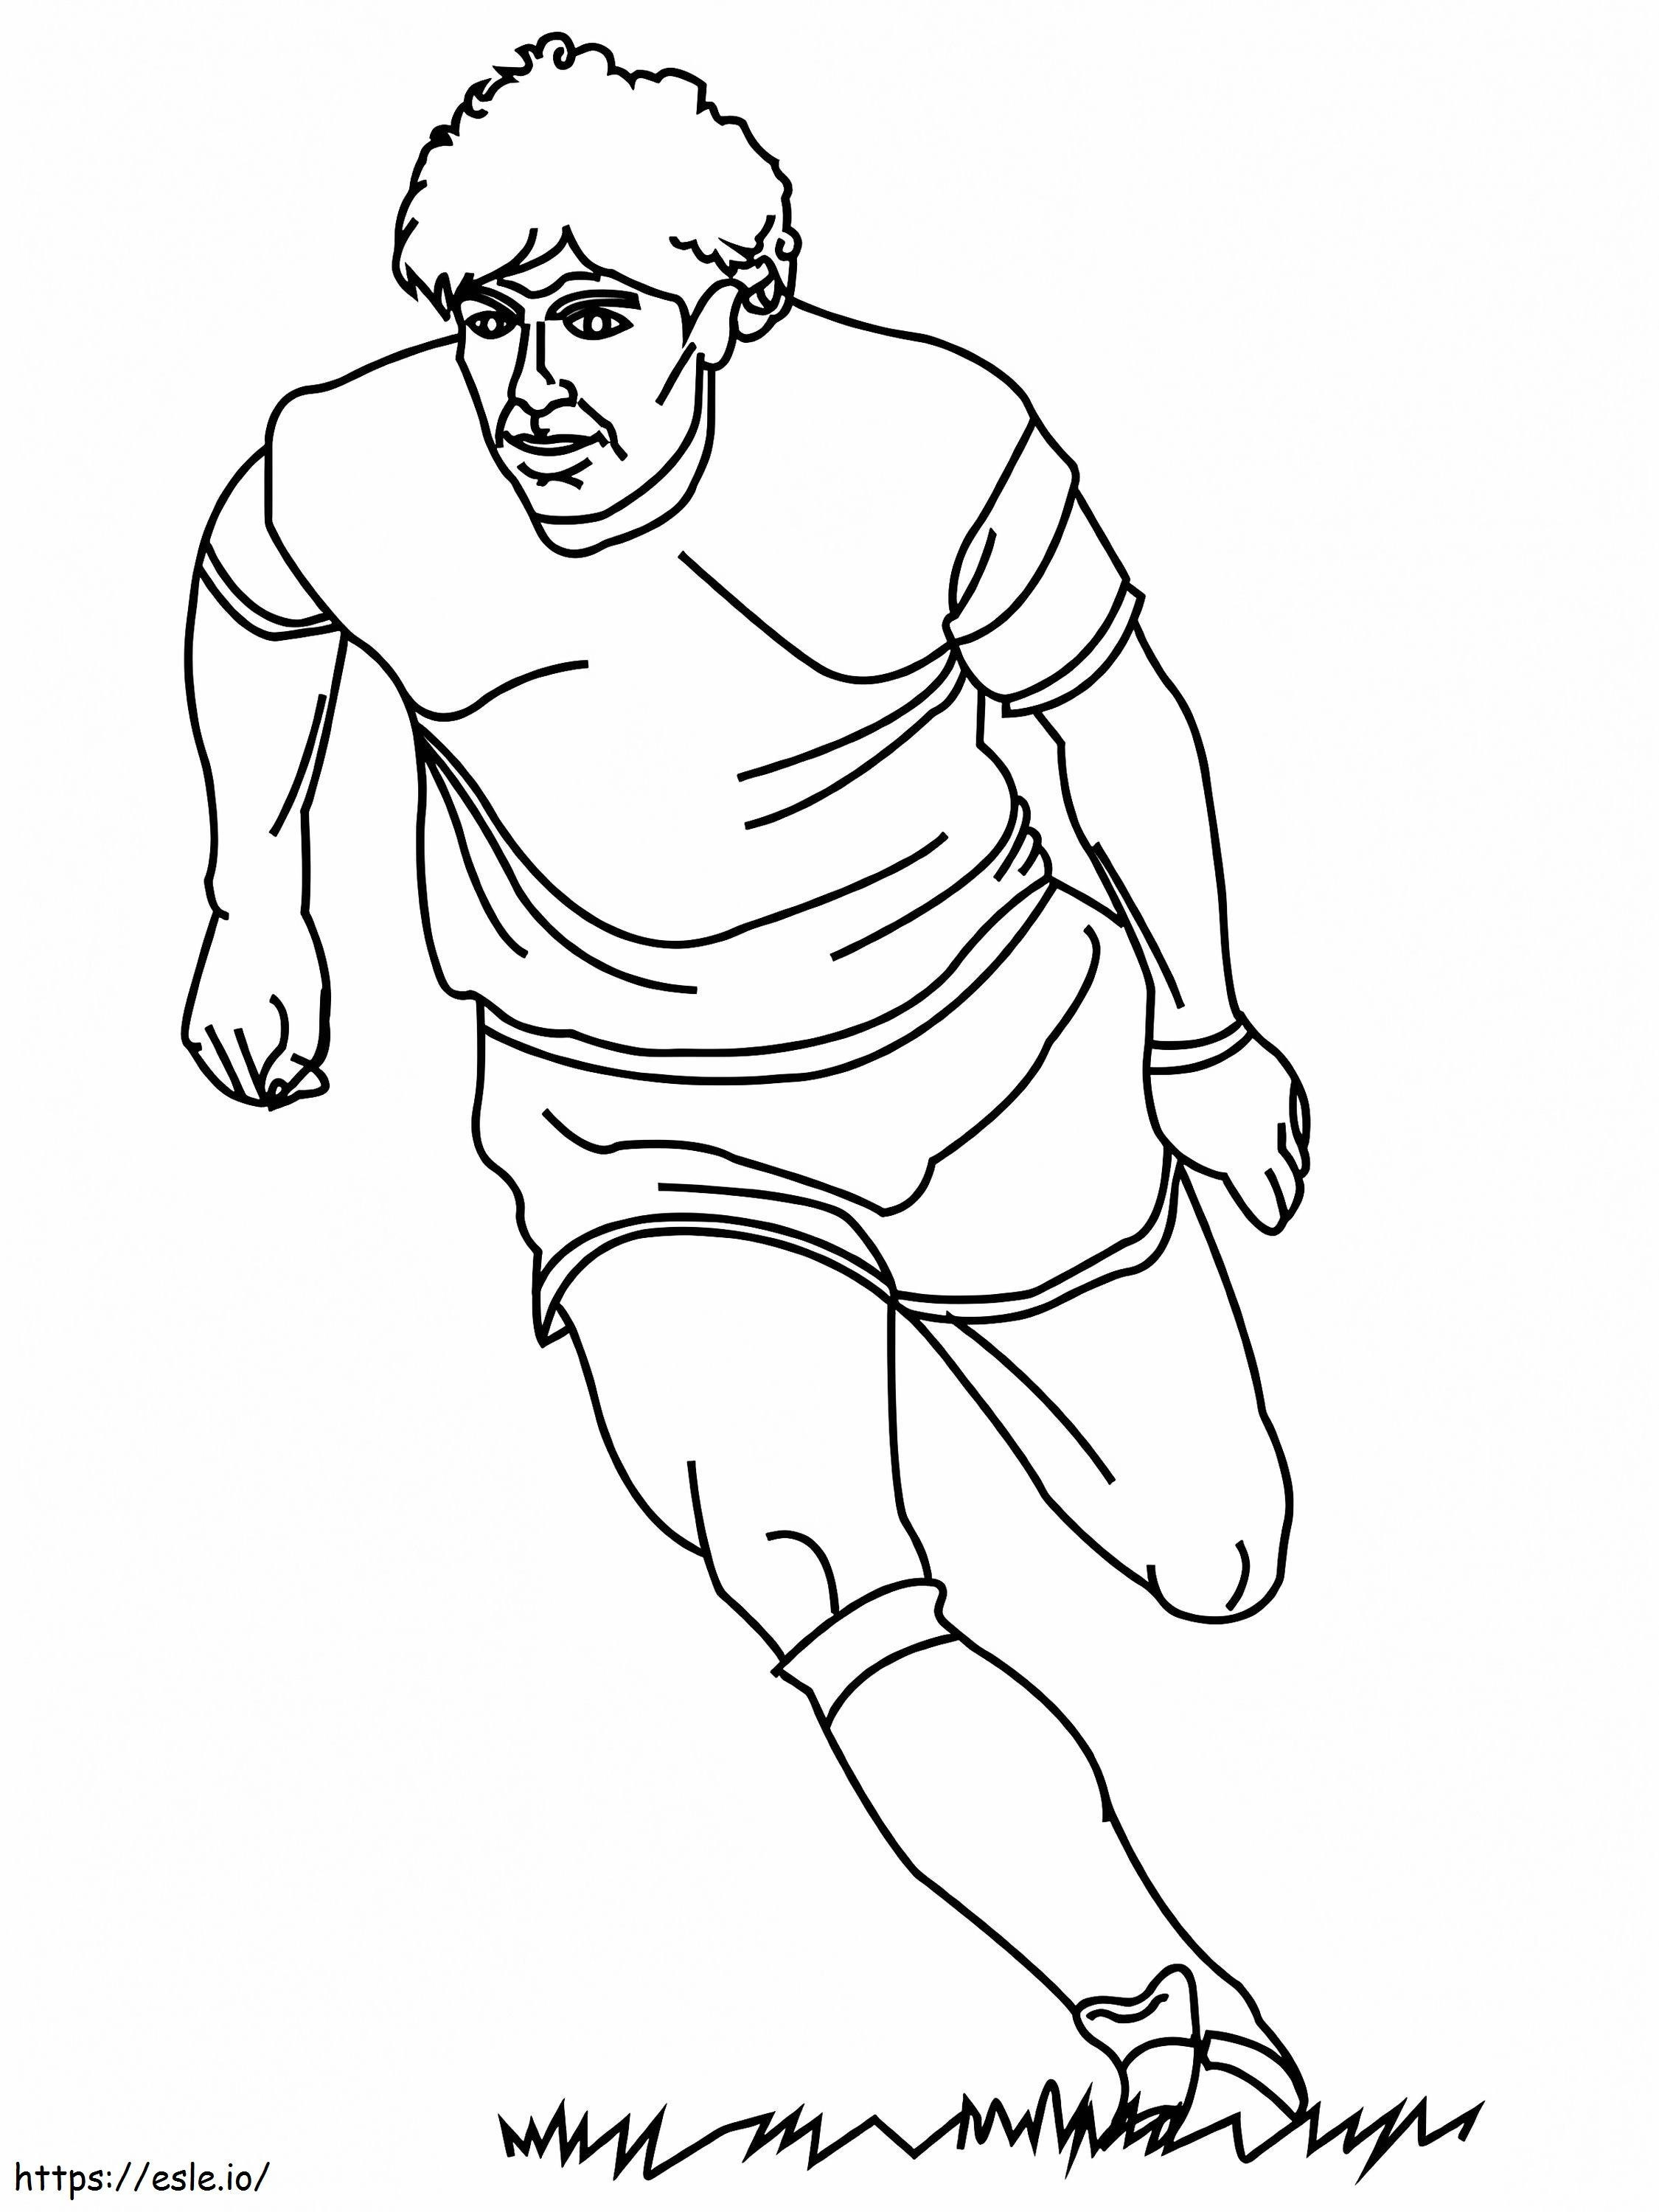 Diego Maradona coloring page